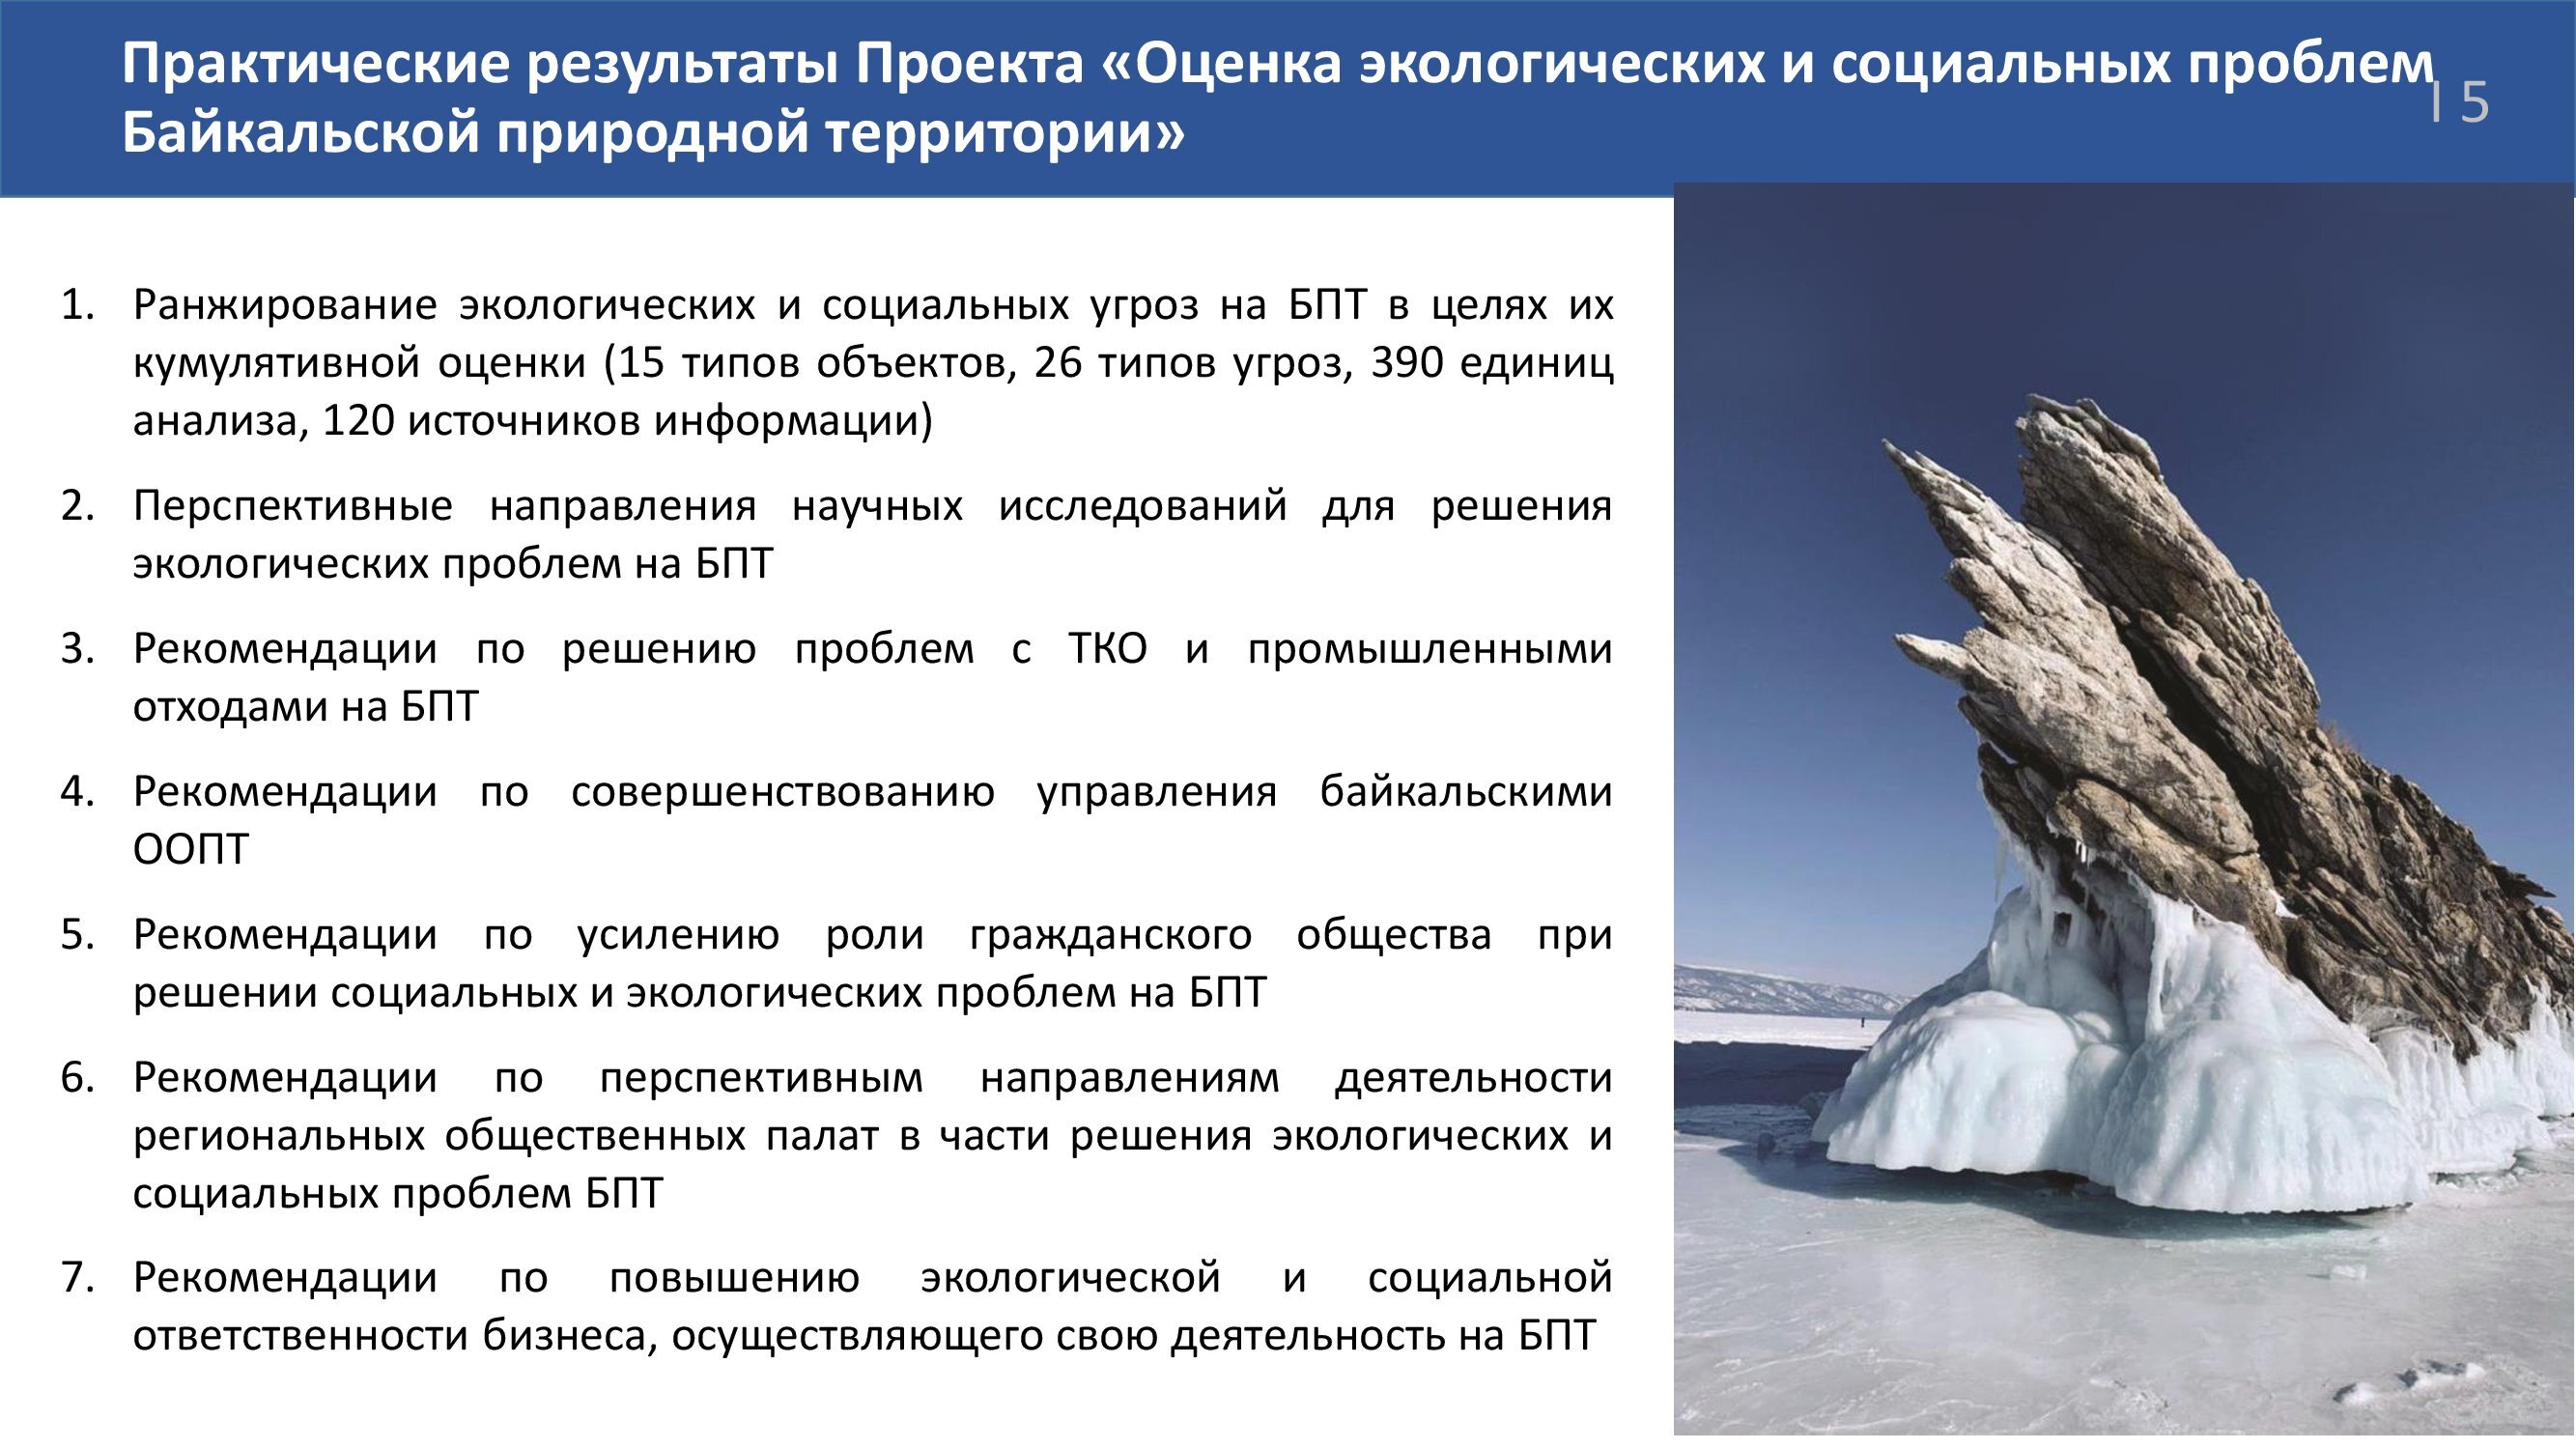 Наталья Толстых: На пути к стратегической экологической оценке Байкальской природной территории: ключевые проблемы сохранения озера Байкал - фото 7